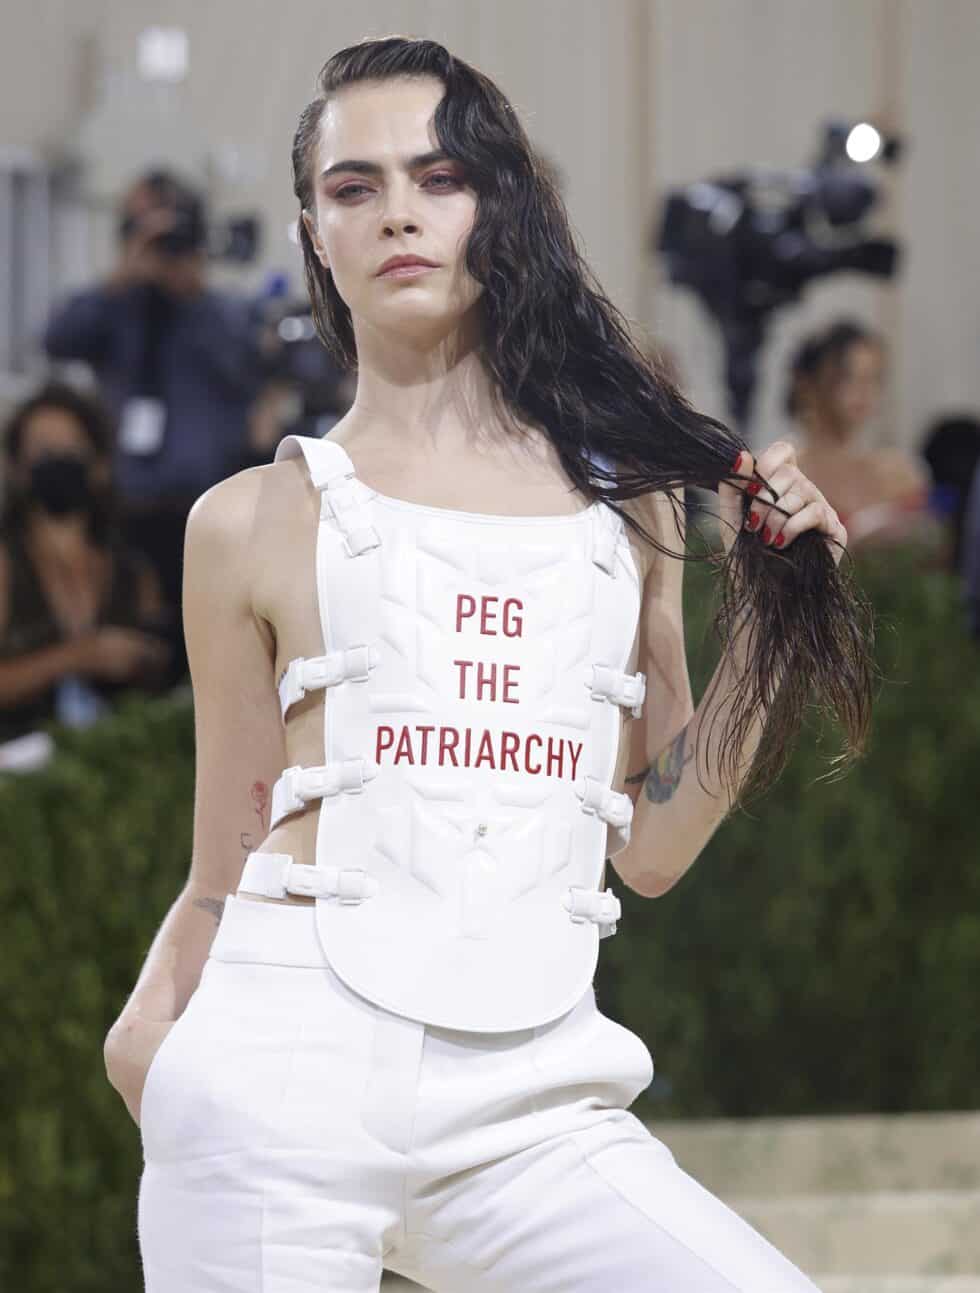 La actriz y modelo Cara Delevinge luce un chaleco antibalas de Dior en el que se lee: 'Peg the patriarchy' ('Neutralicemos el patriarcado')